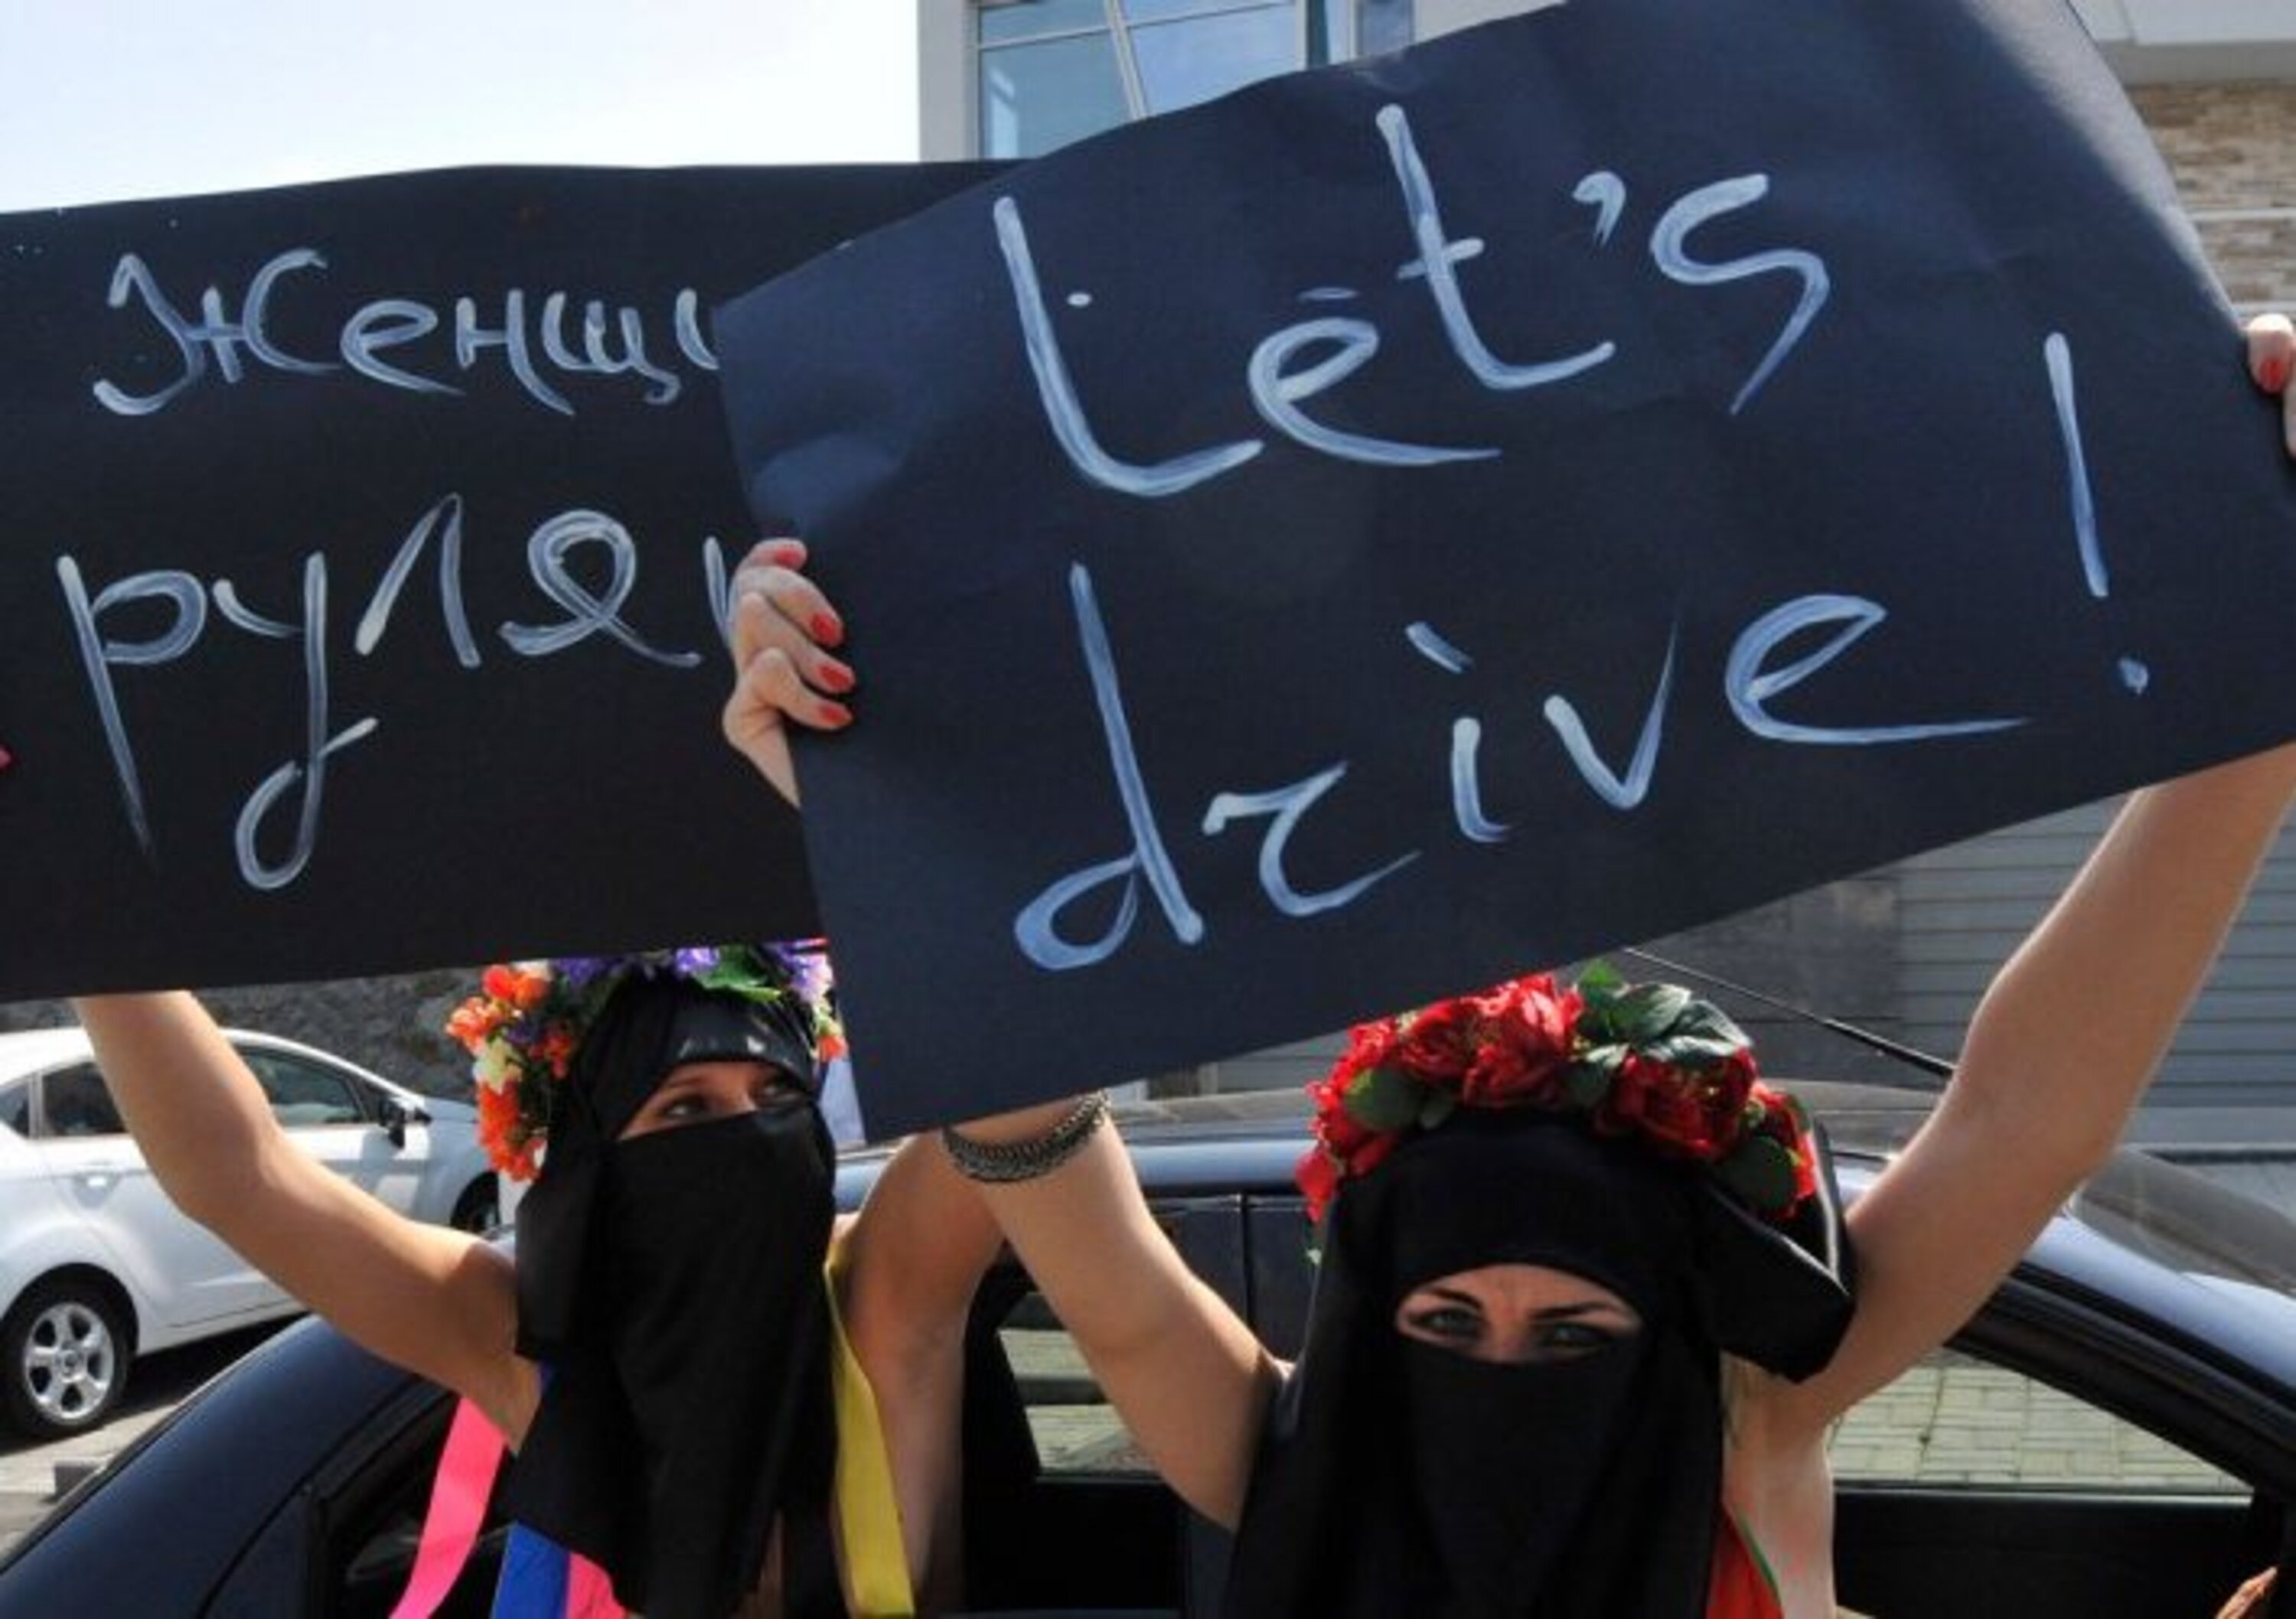 Le donne in Arabia Saudita possono guidare, anche le moto!